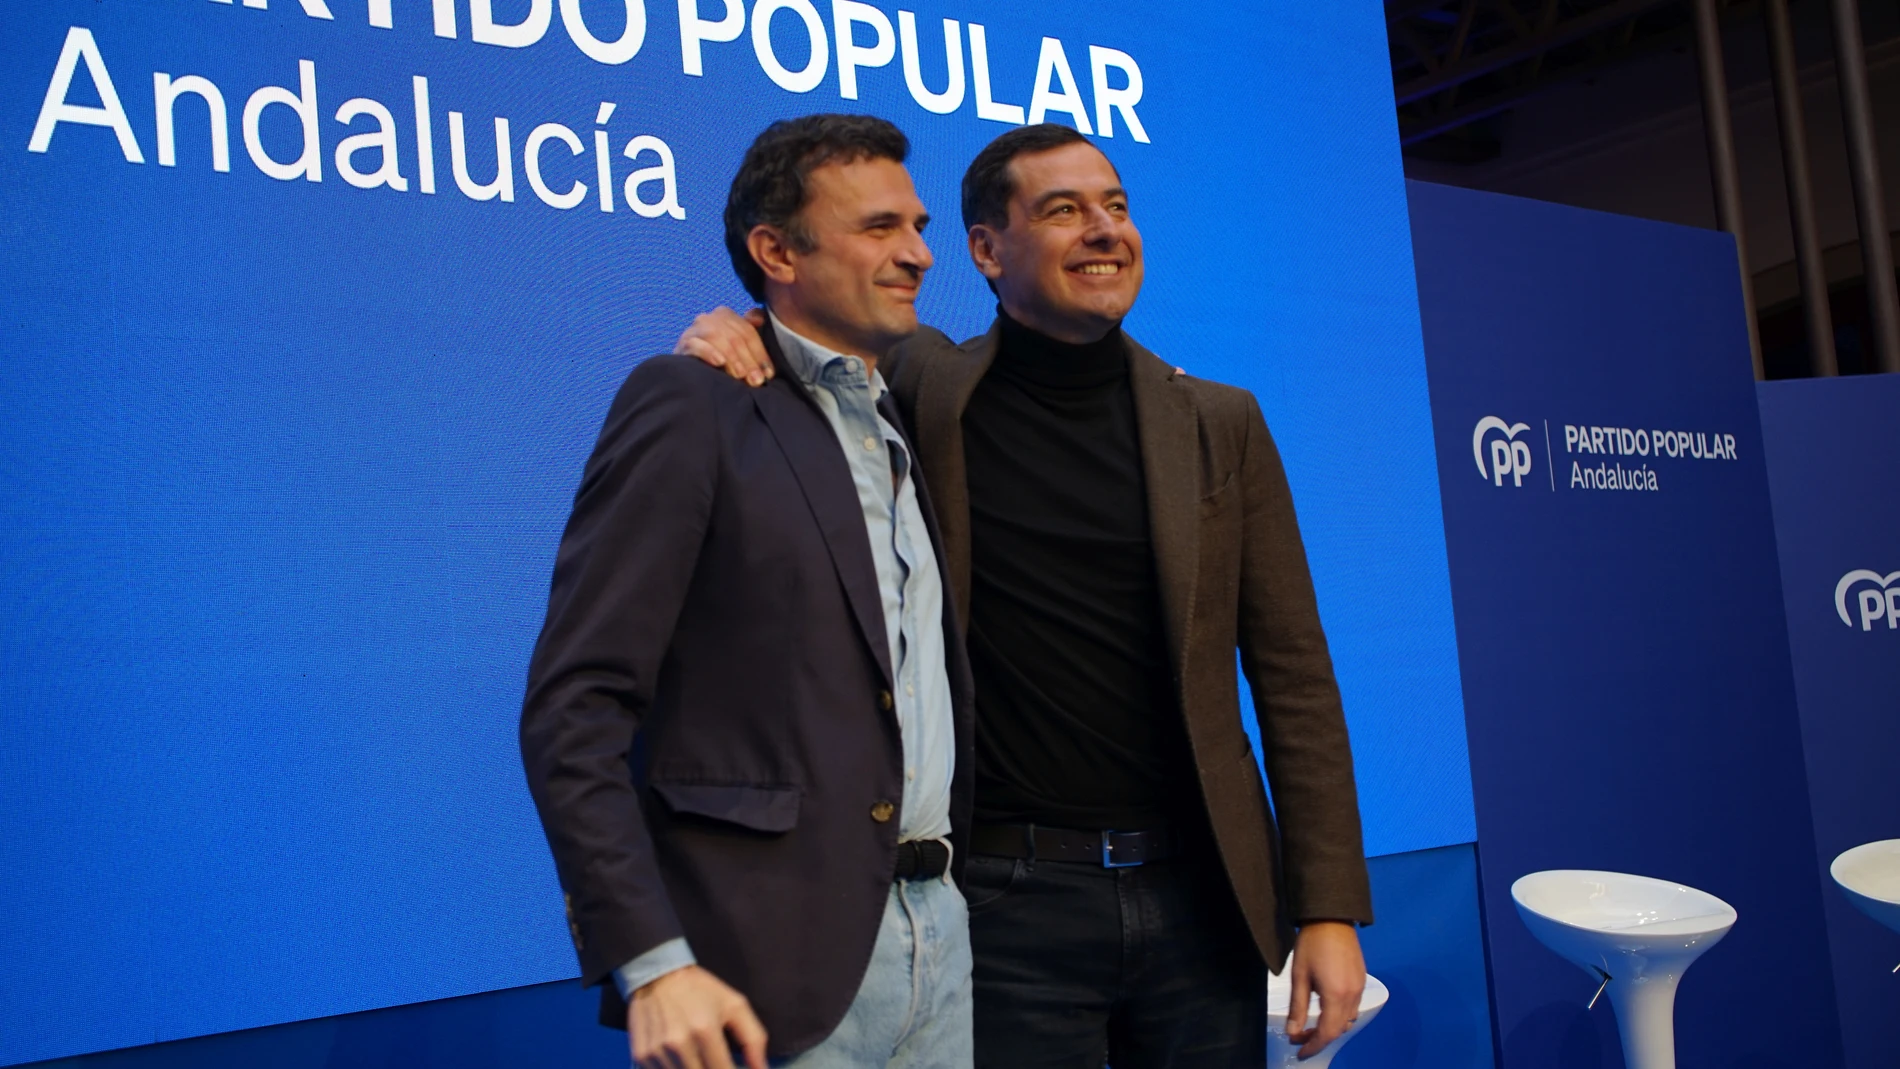 El presidente de la Junta de Andalucía, Juanma Moreno, junto al candidato popular a la Alcaldía de Cádiz, Bruno García